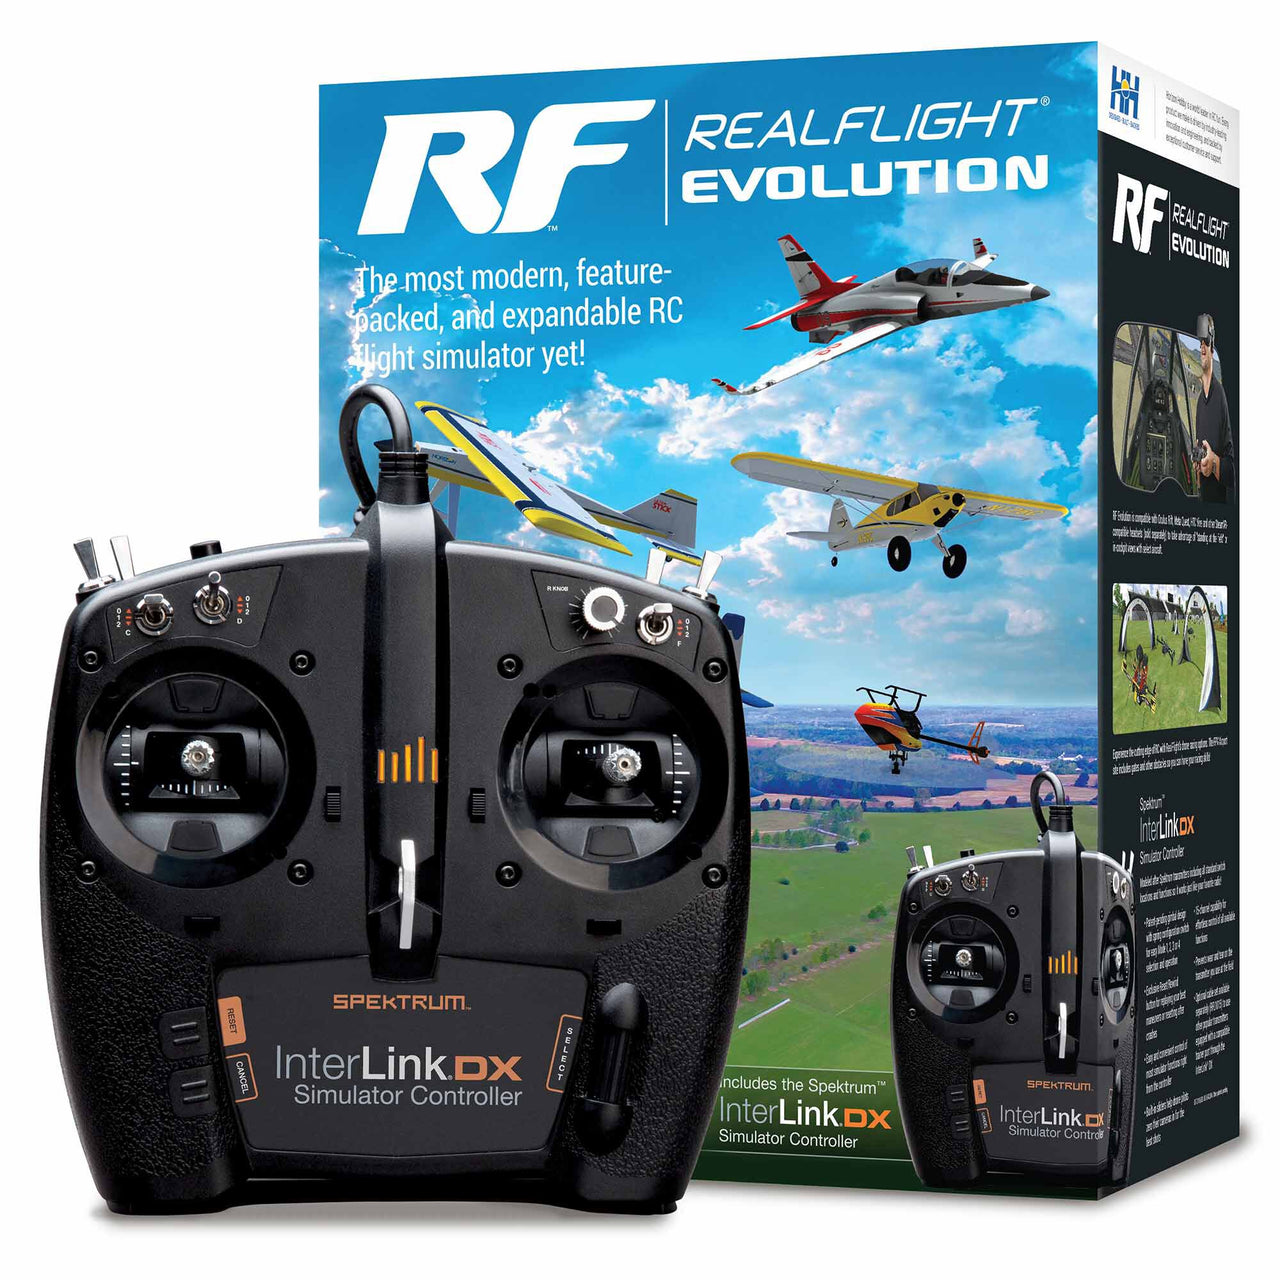 RFL2000 RealFlight Evolution RC Simulador de vuelo con controlador InterLink DX 